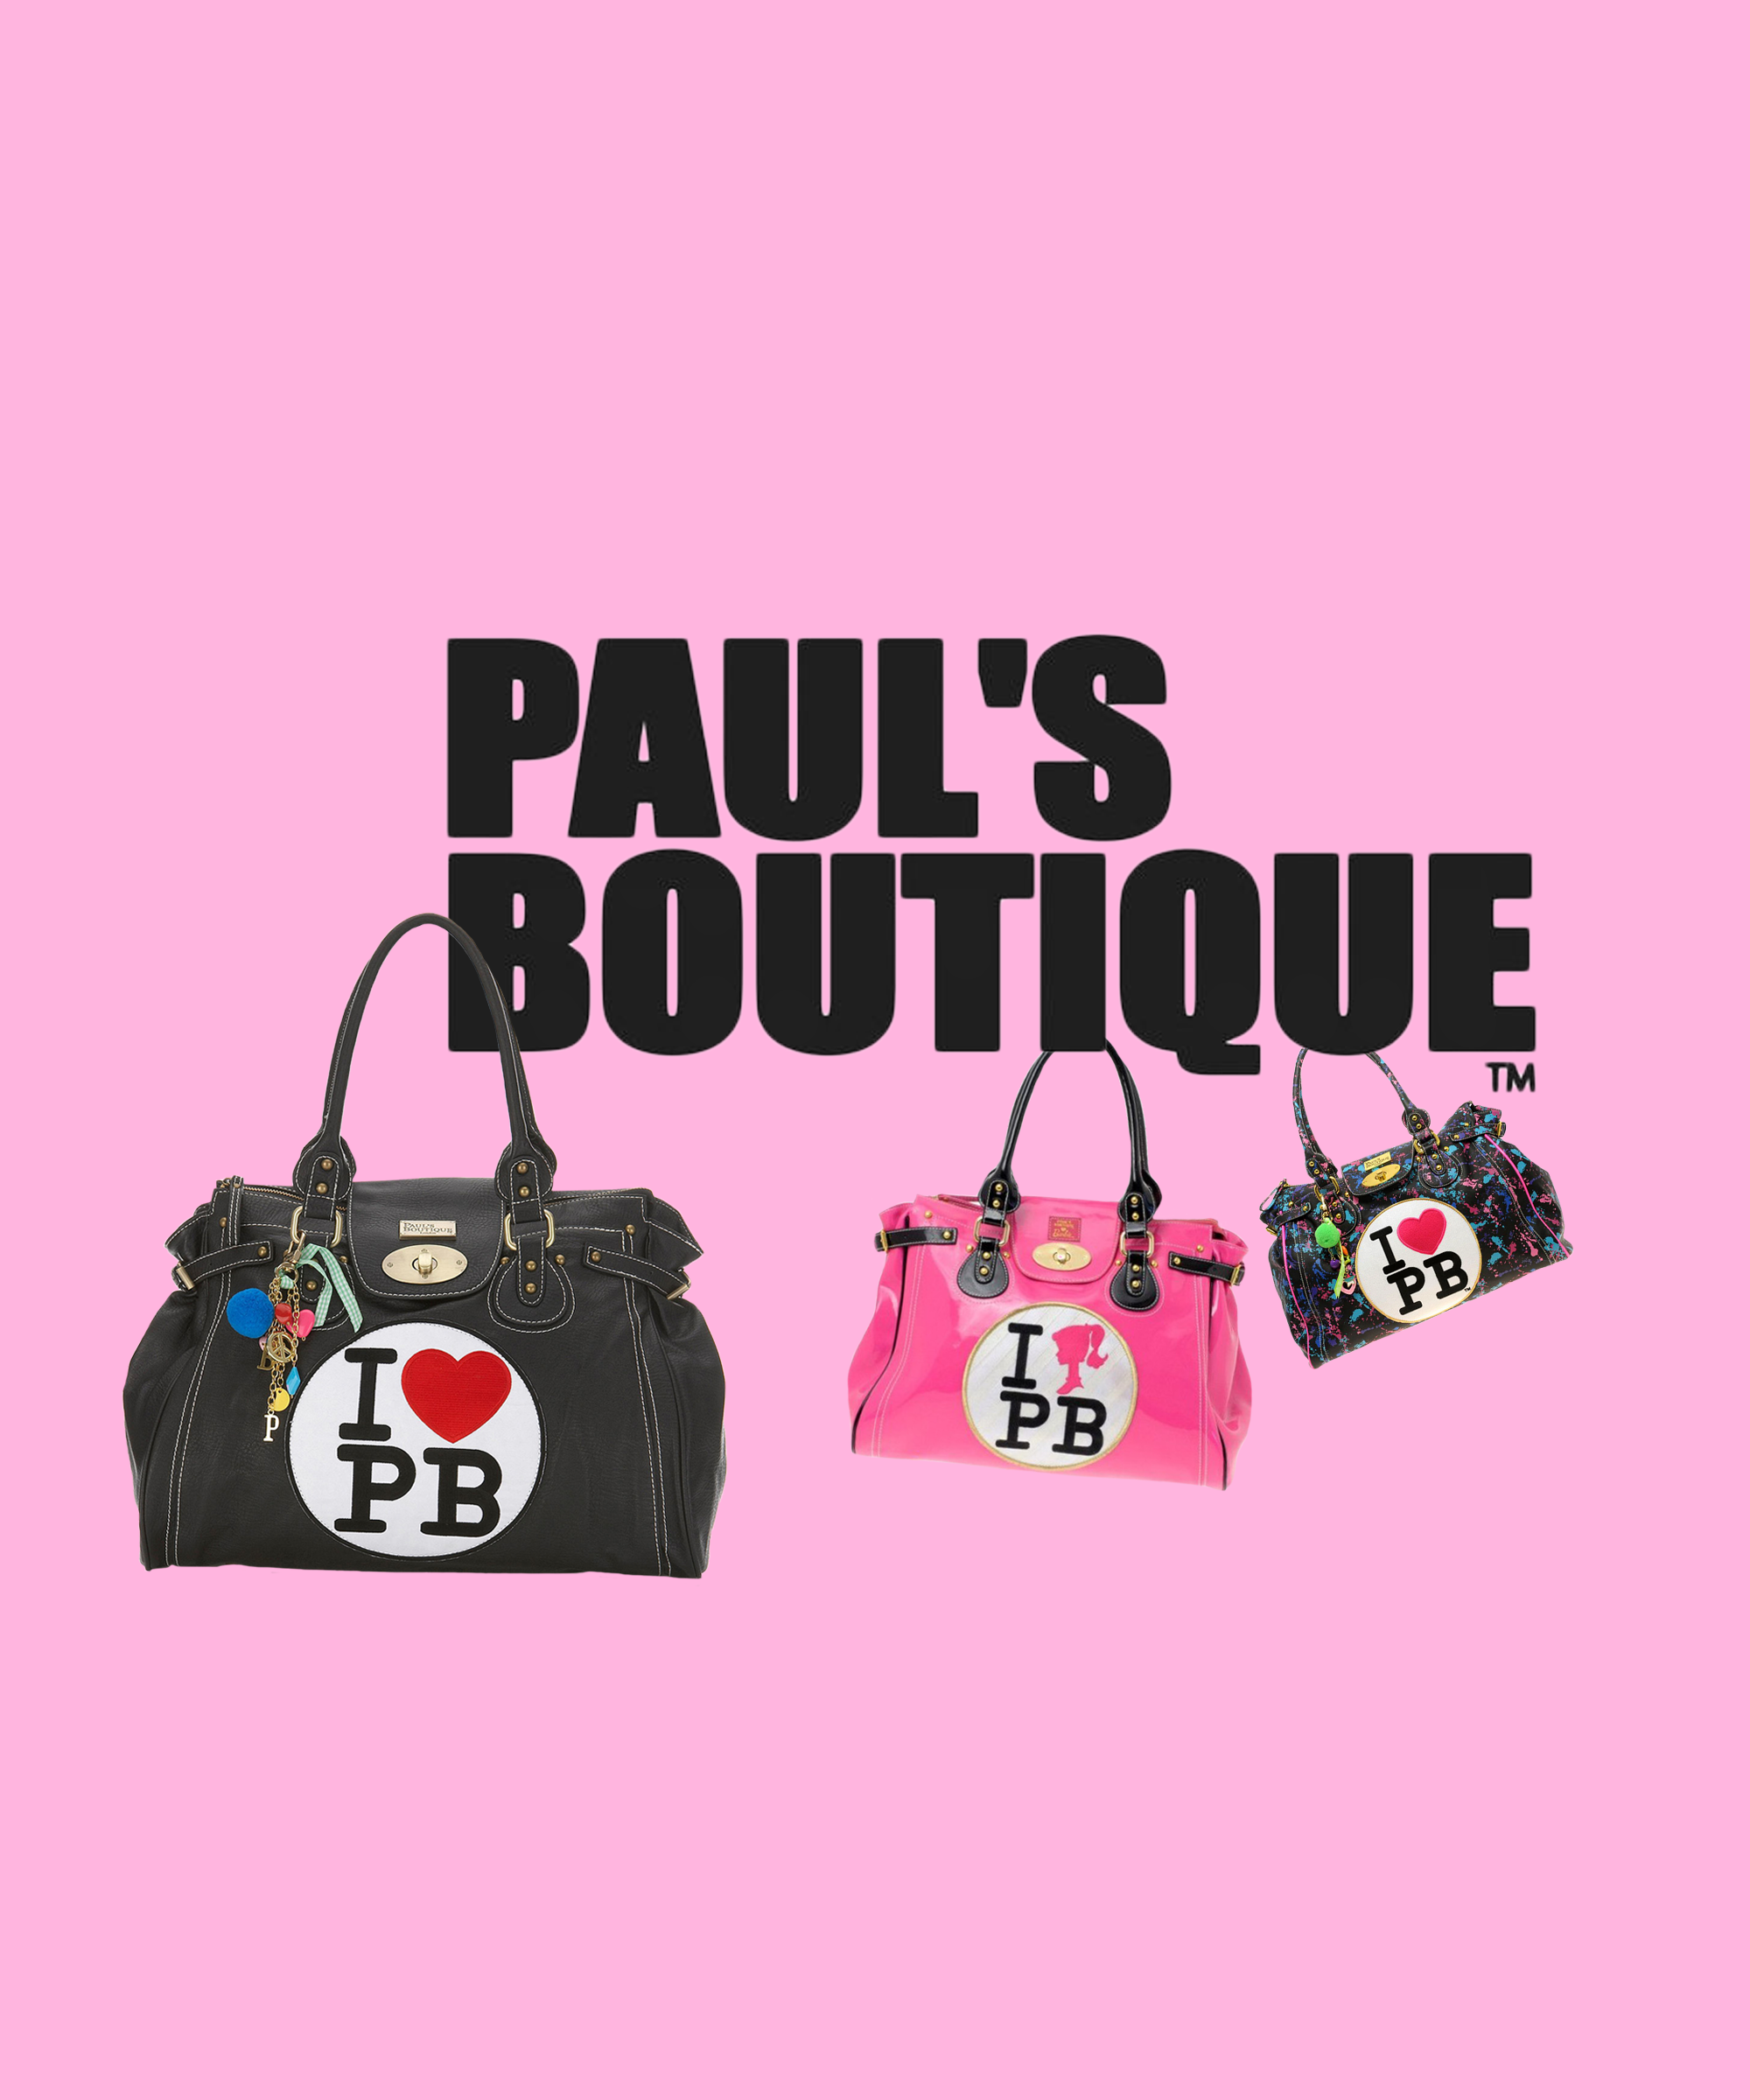 Paul's Boutique London Bag